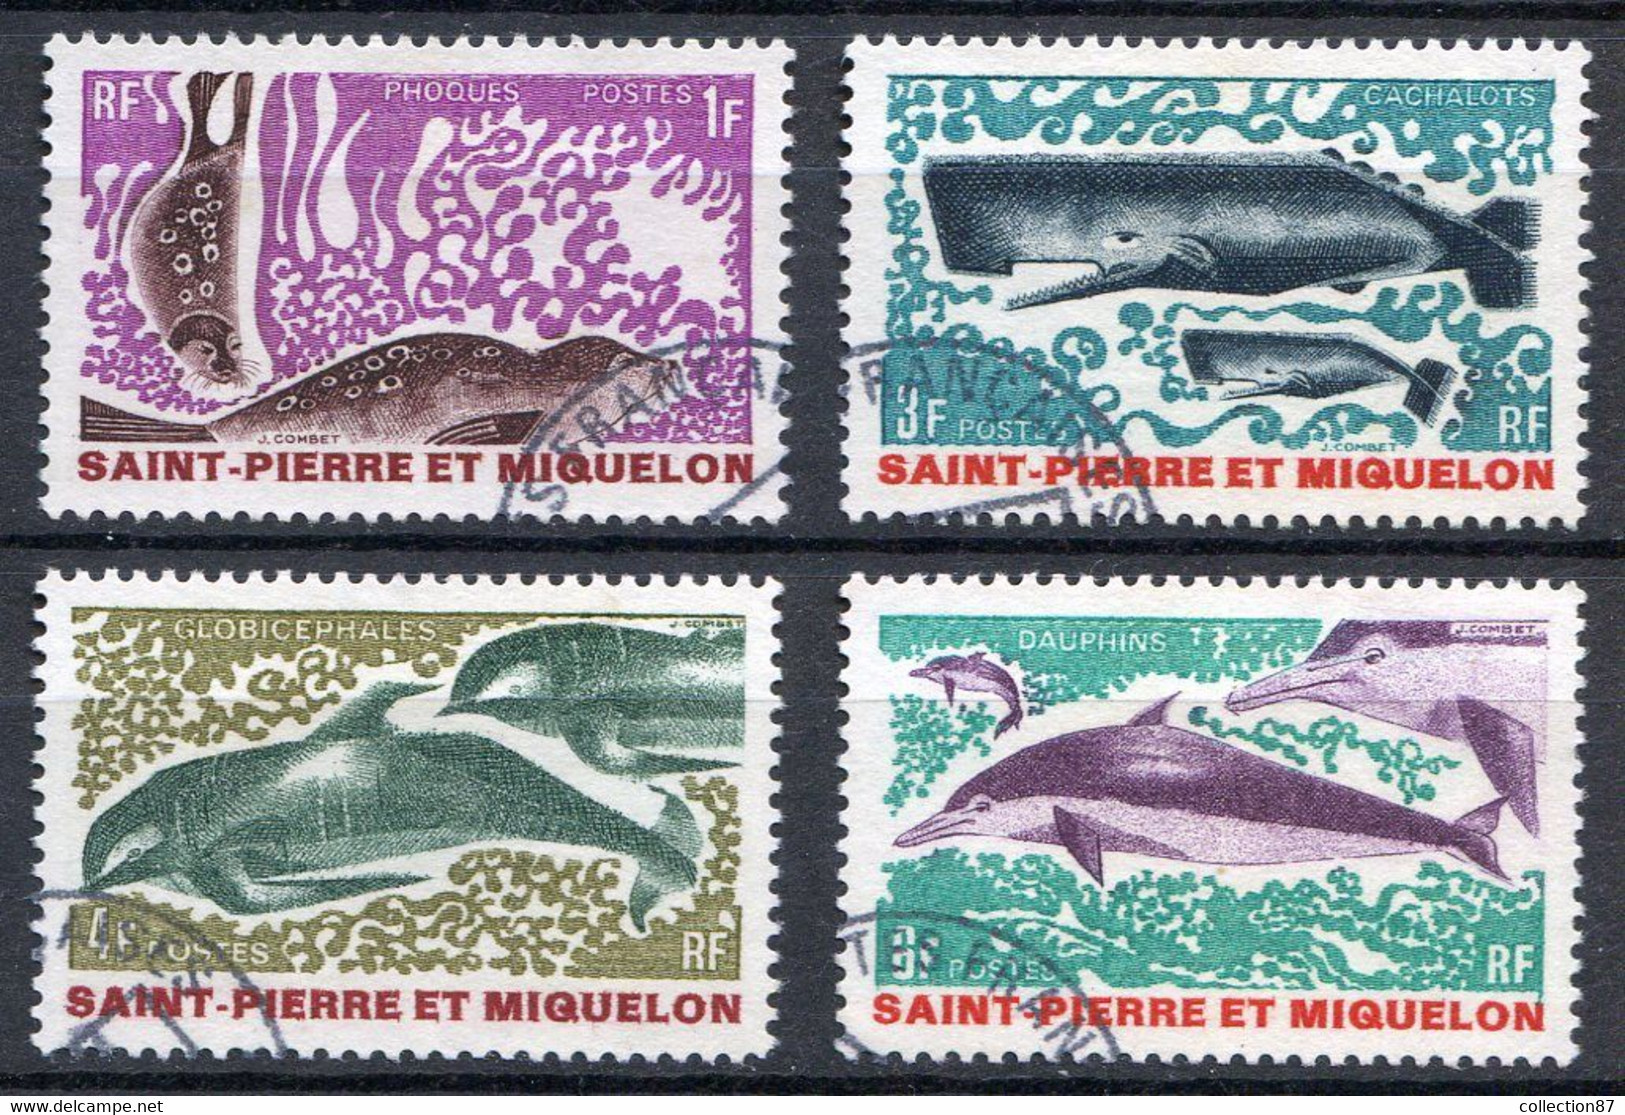 Réf 55 CL2 < -- SAINT PIERRE Et MIQUELON < Yvert N° 391 à 394 Ø < Oblitéré Ø Used - Phoques Dauphins Cachalots - Used Stamps